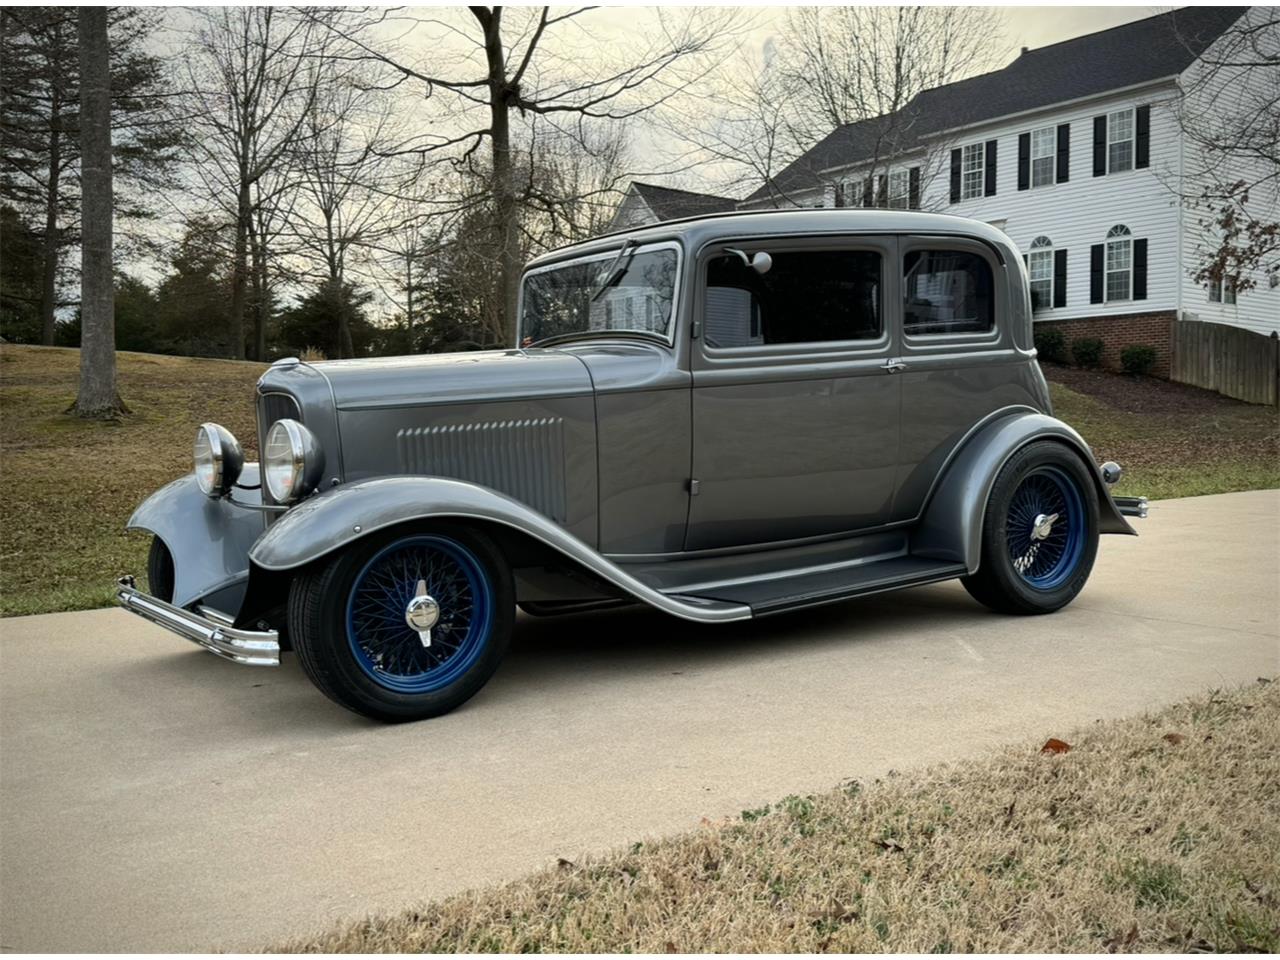 For Sale: 1932 Ford Victoria in Manassas , Virginia for sale in Manassas, VA